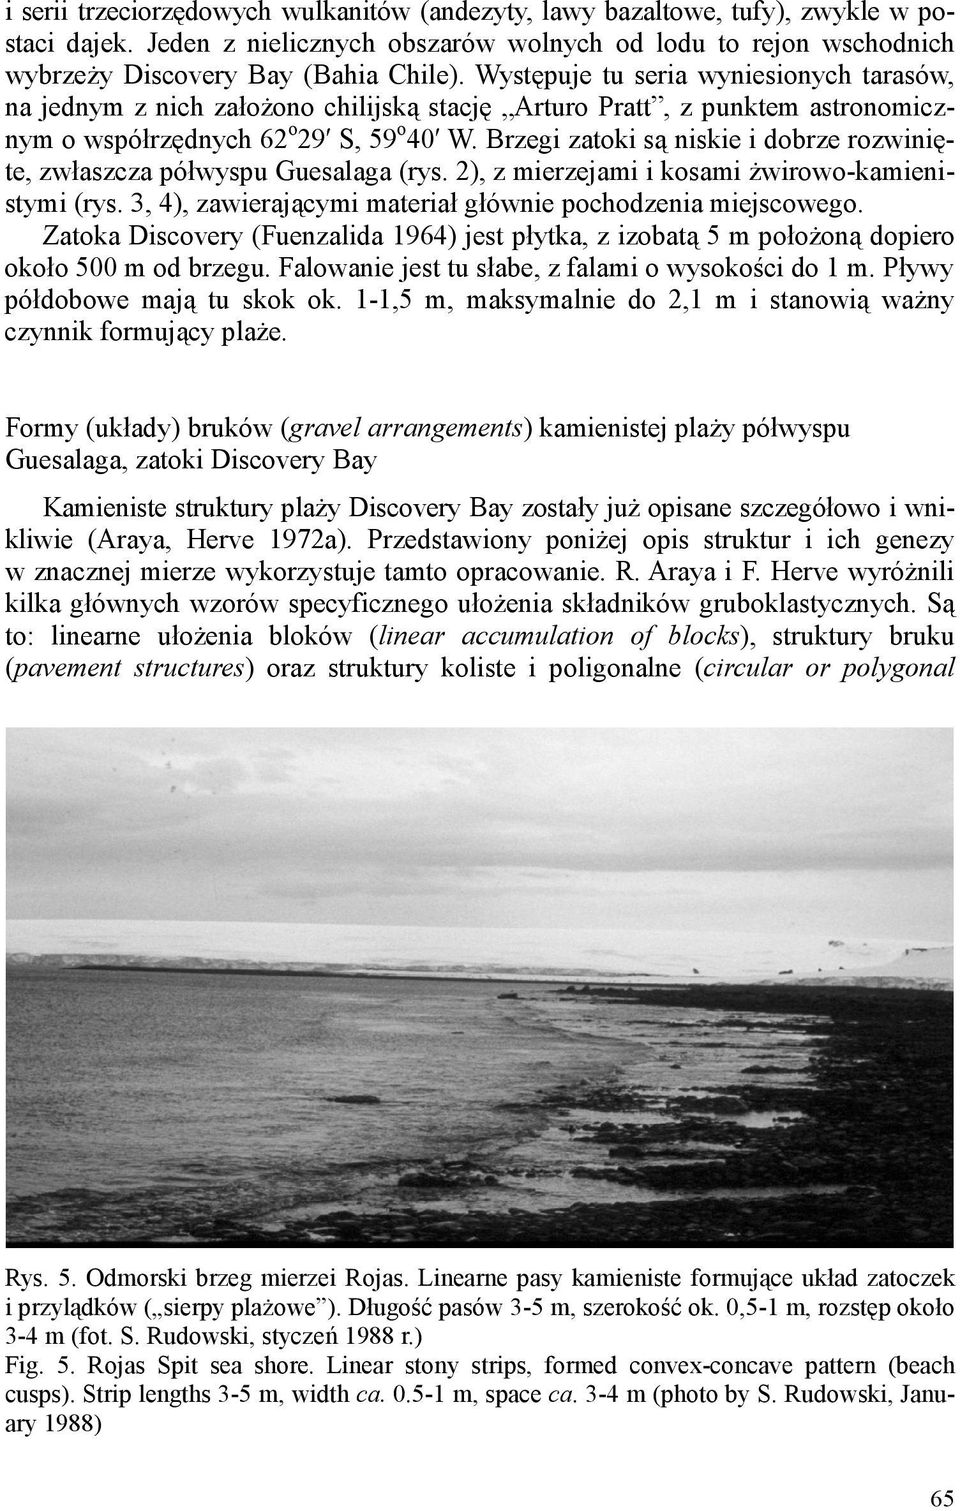 Brzegi zatoki są niskie i dobrze rozwinięte, zwłaszcza półwyspu Guesalaga (rys. 2), z mierzejami i kosami żwirowo-kamienistymi (rys. 3, 4), zawierającymi materiał głównie pochodzenia miejscowego.